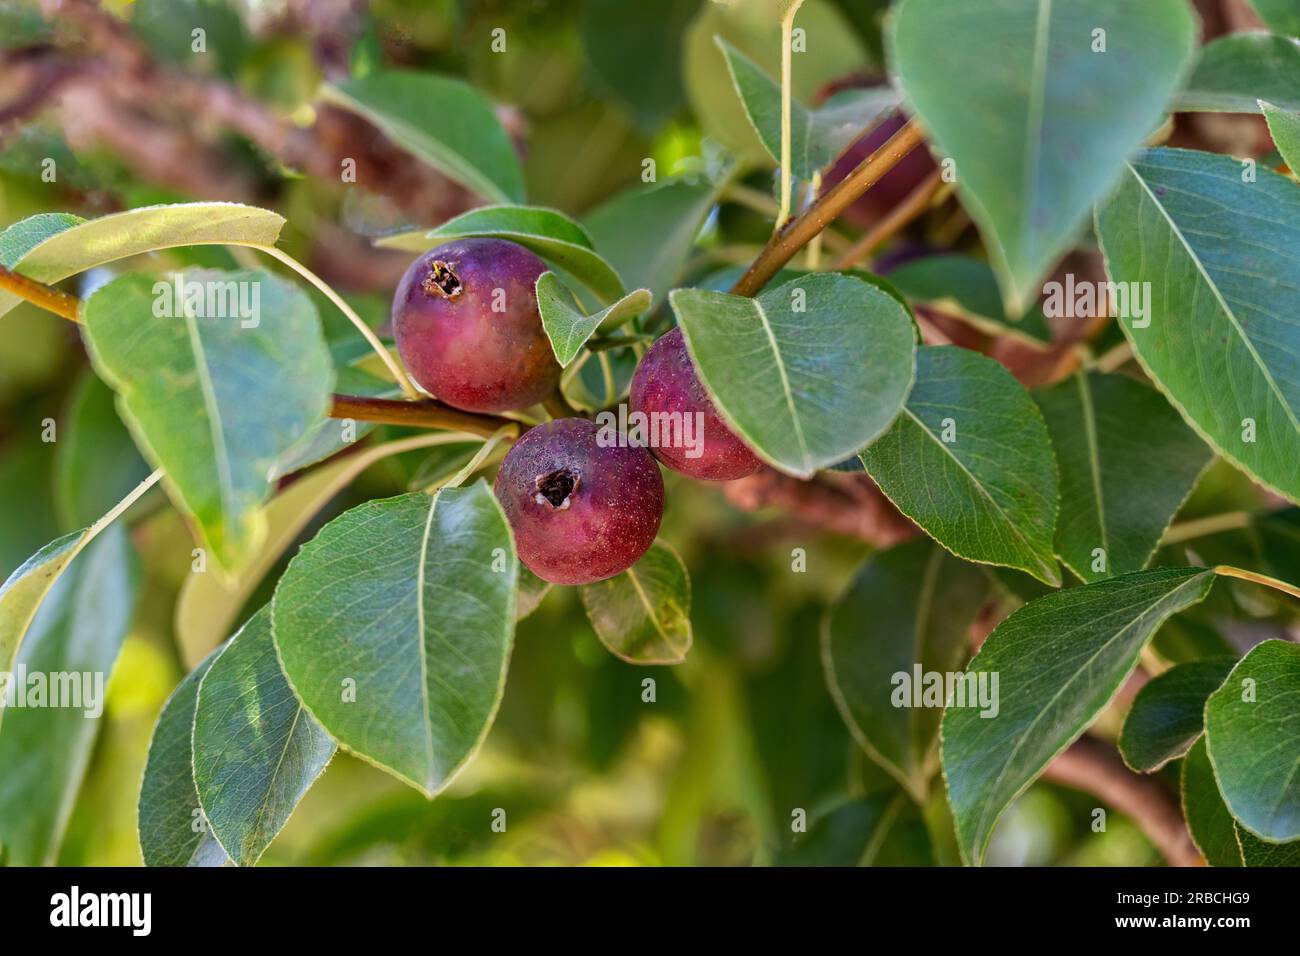 Fresh sweet Pear Seckel fruit growing on a tree Stock Photo